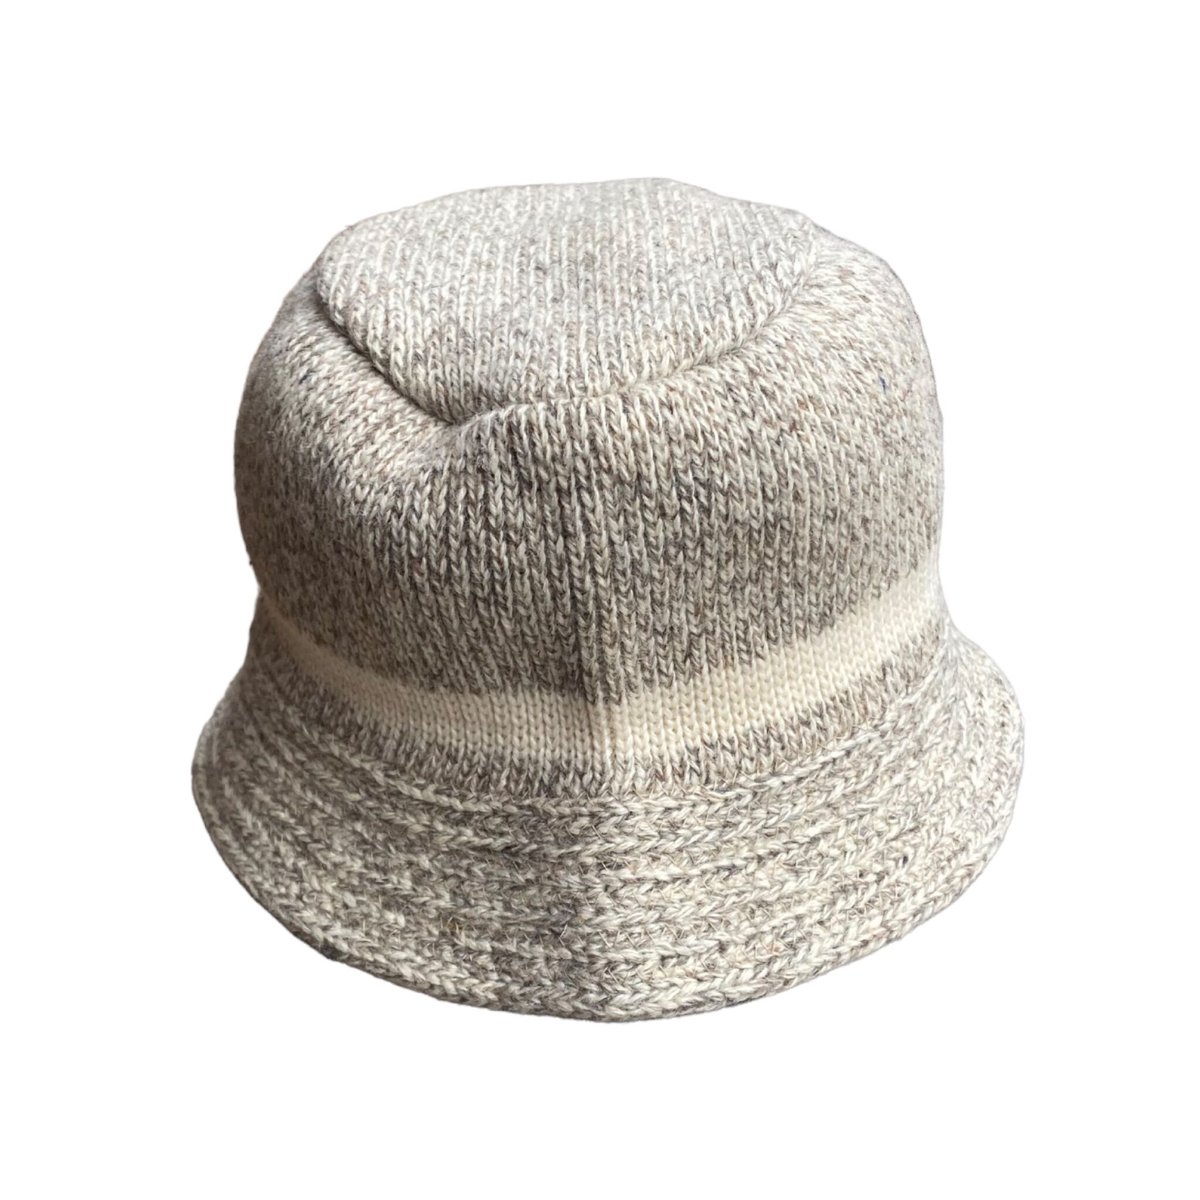 penthouse knits wool bucket hat | UMU